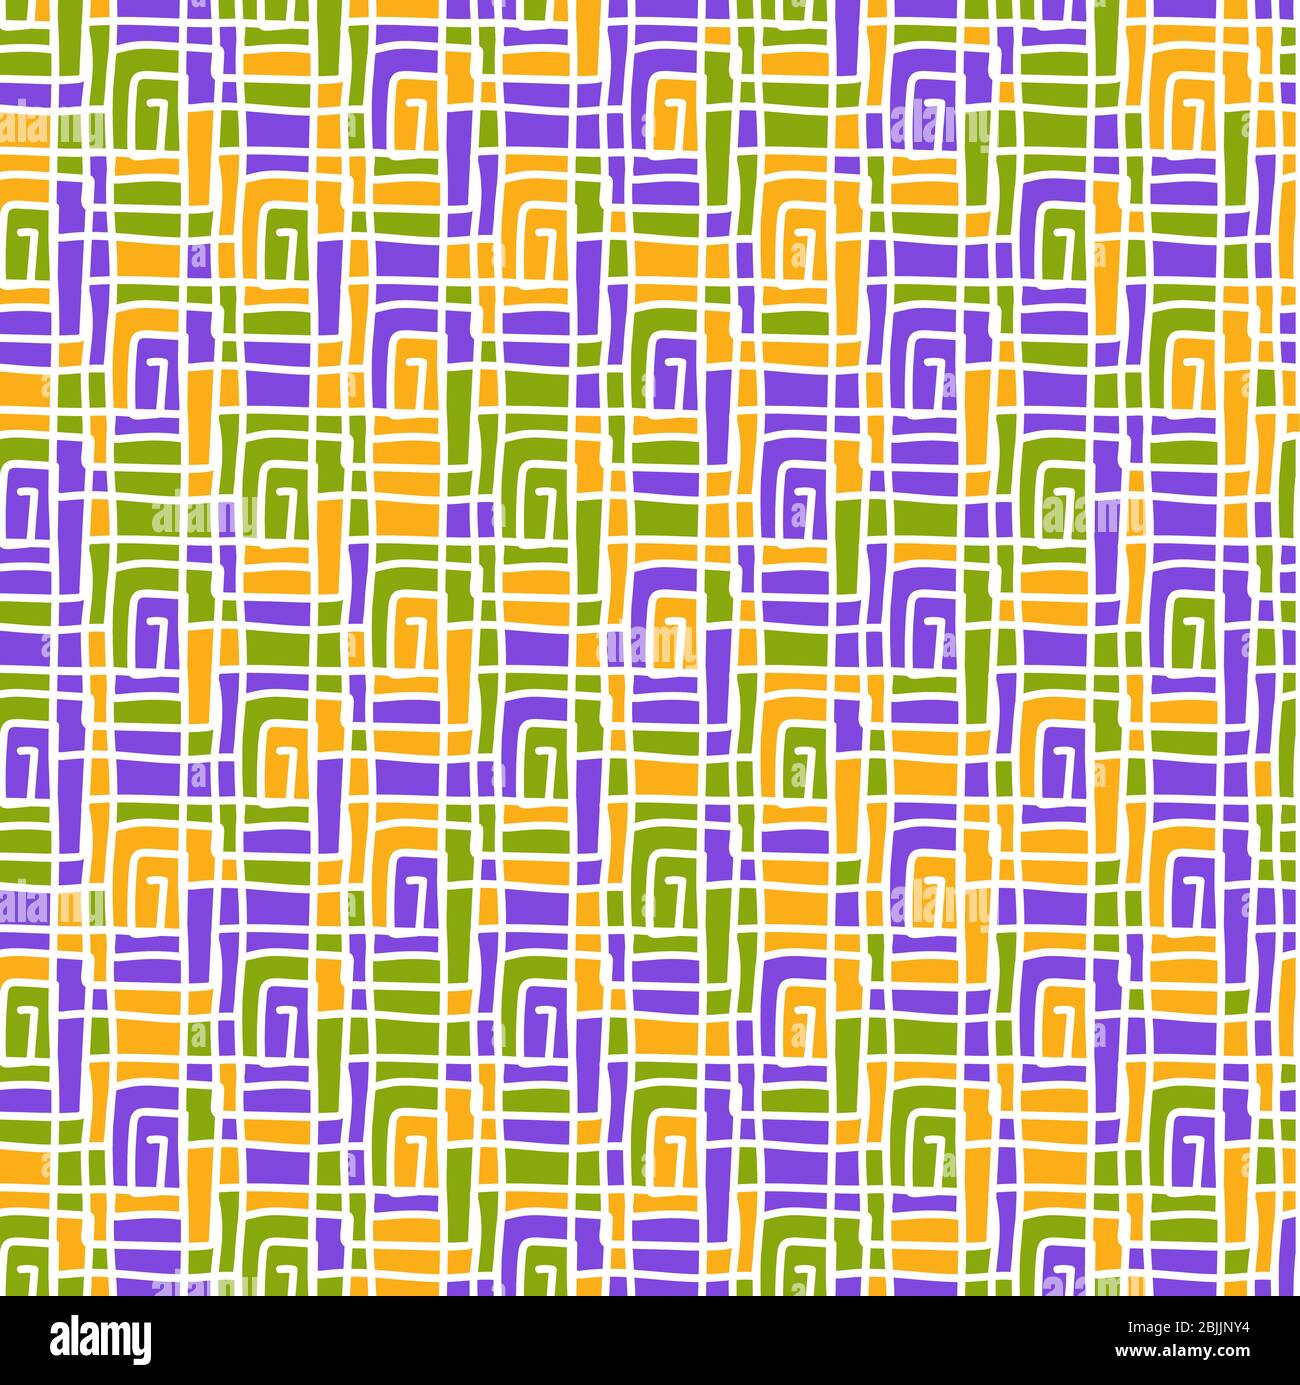 Vektor Farbe nahtloses Muster von beliebigen Linien des Quadrats. Stock Illustration für Hintergründe, Textilien und Verpackungen. Stock Vektor